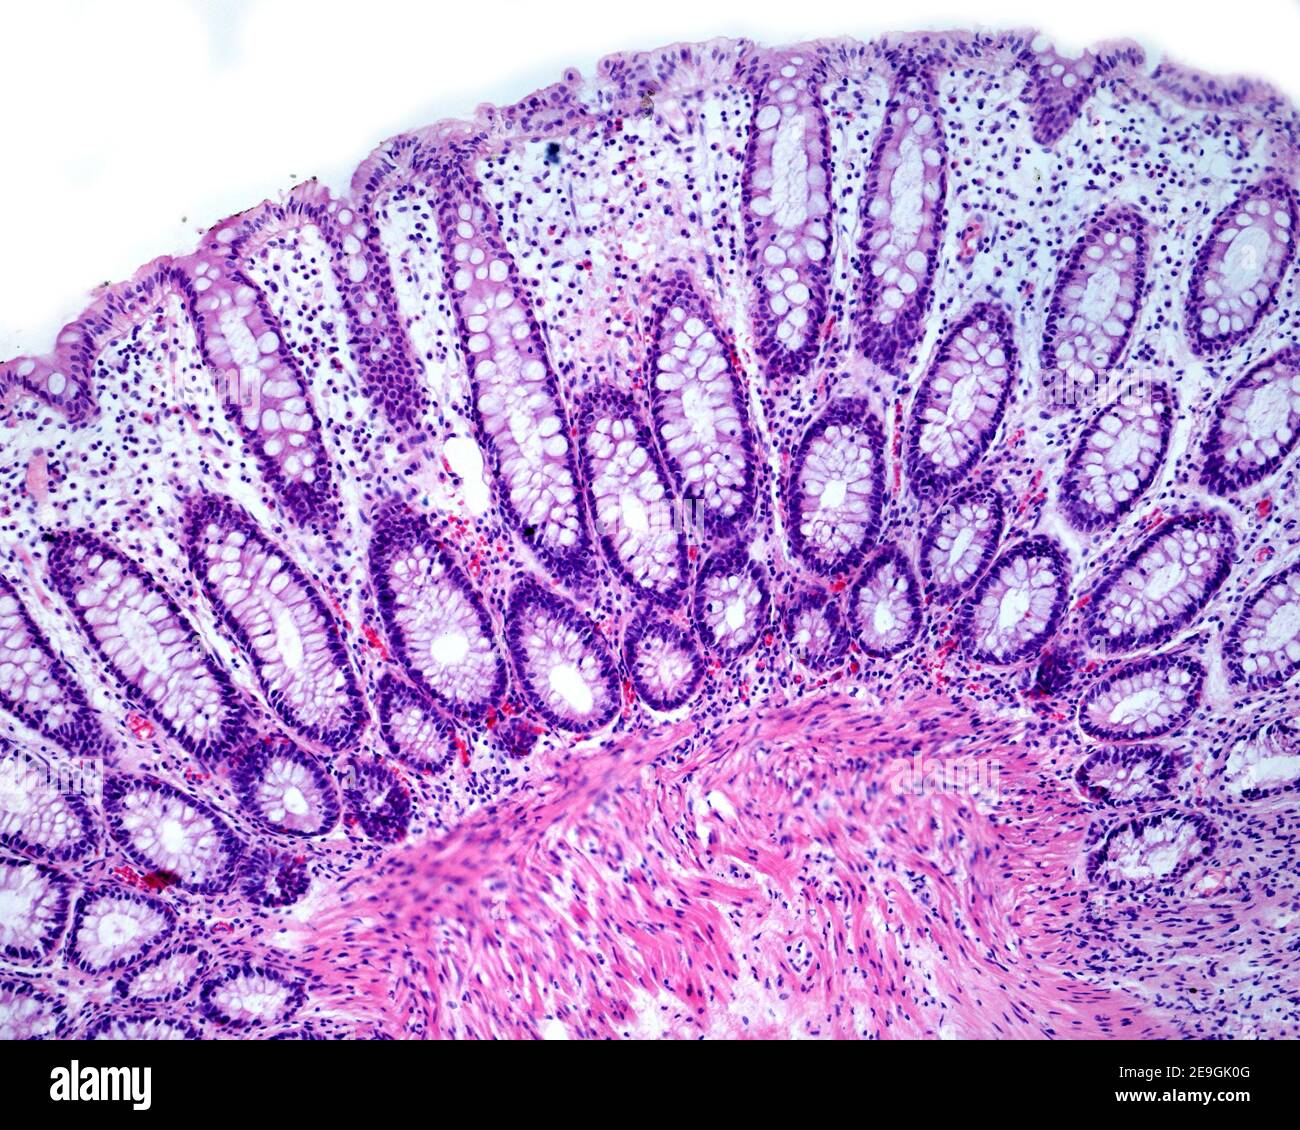 Lieberkühn Krypten einer menschlichen Dickdarmschleimhaut zeigen reichlich Koboldzellen von blassen Zytoplasma. Stockfoto